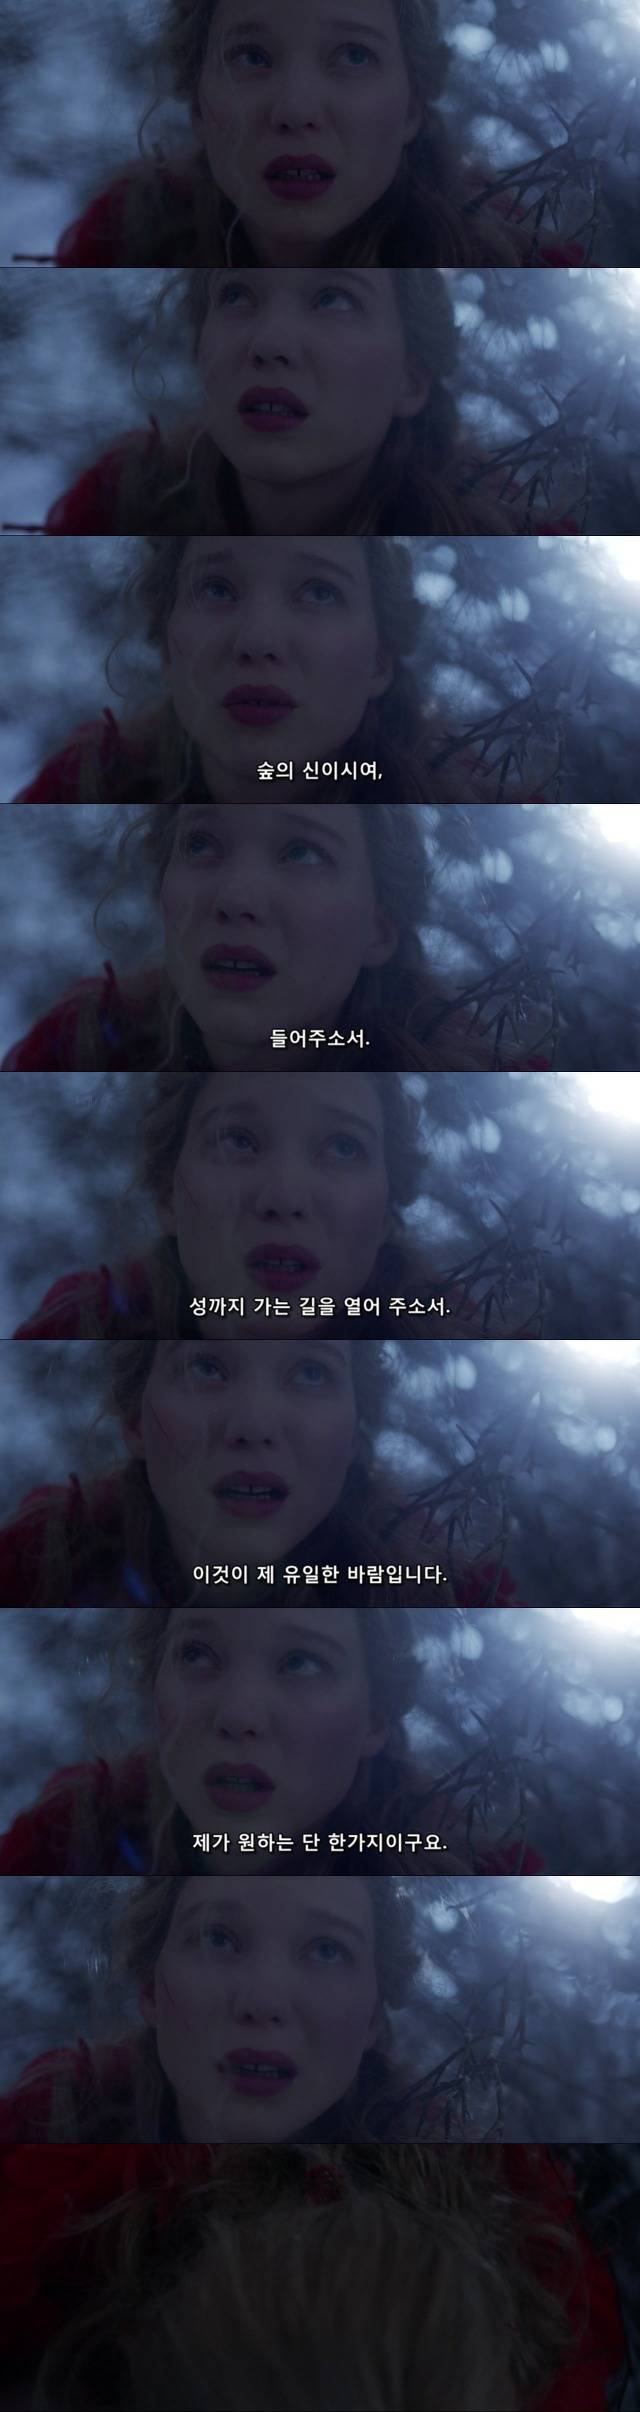 영화"미녀와 야수"(2014) 레아 세이두 / 뱅상 카셀 주연의 프랑스 판타지 로맨스! (9) | 인스티즈